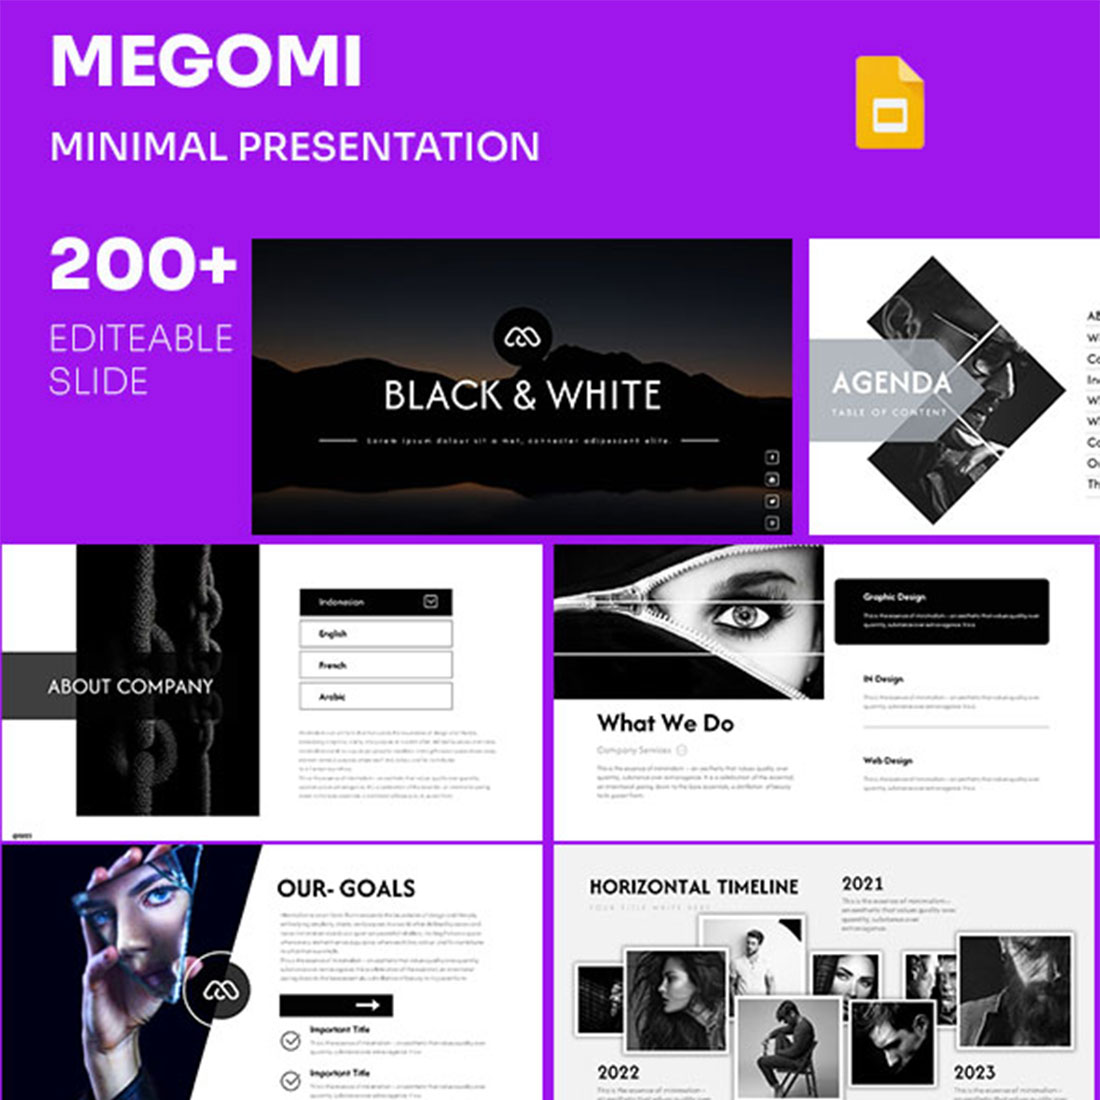 Megomi Google Slide Presentation Template cover image.